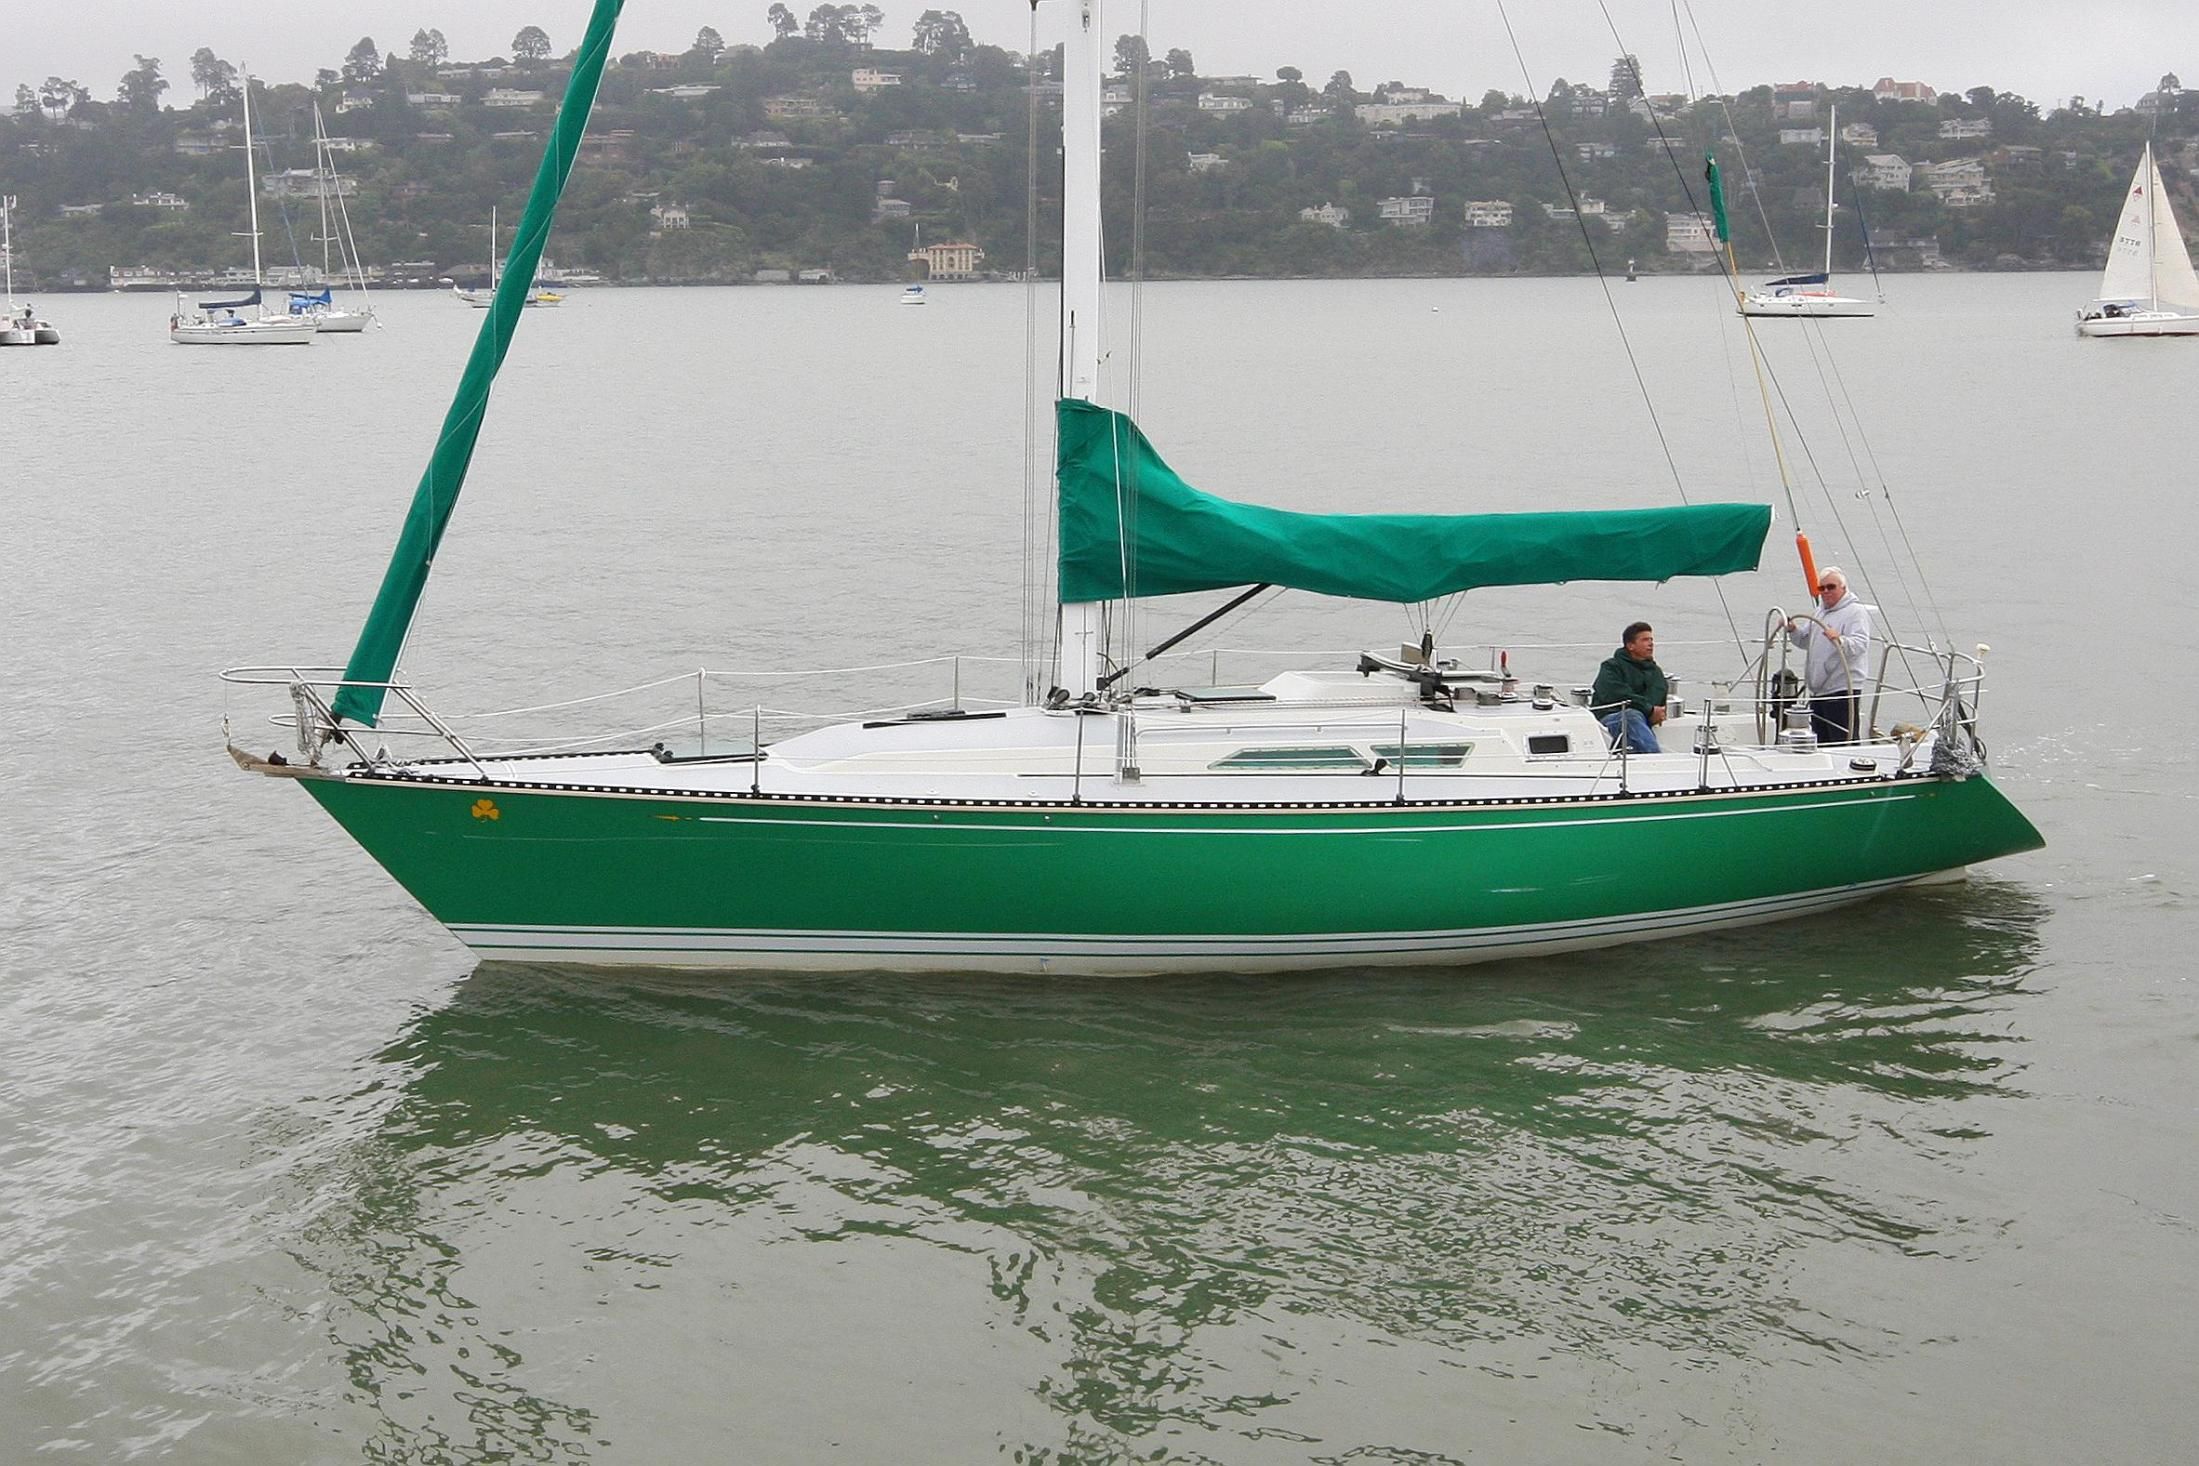 c&c 41 sailboat review